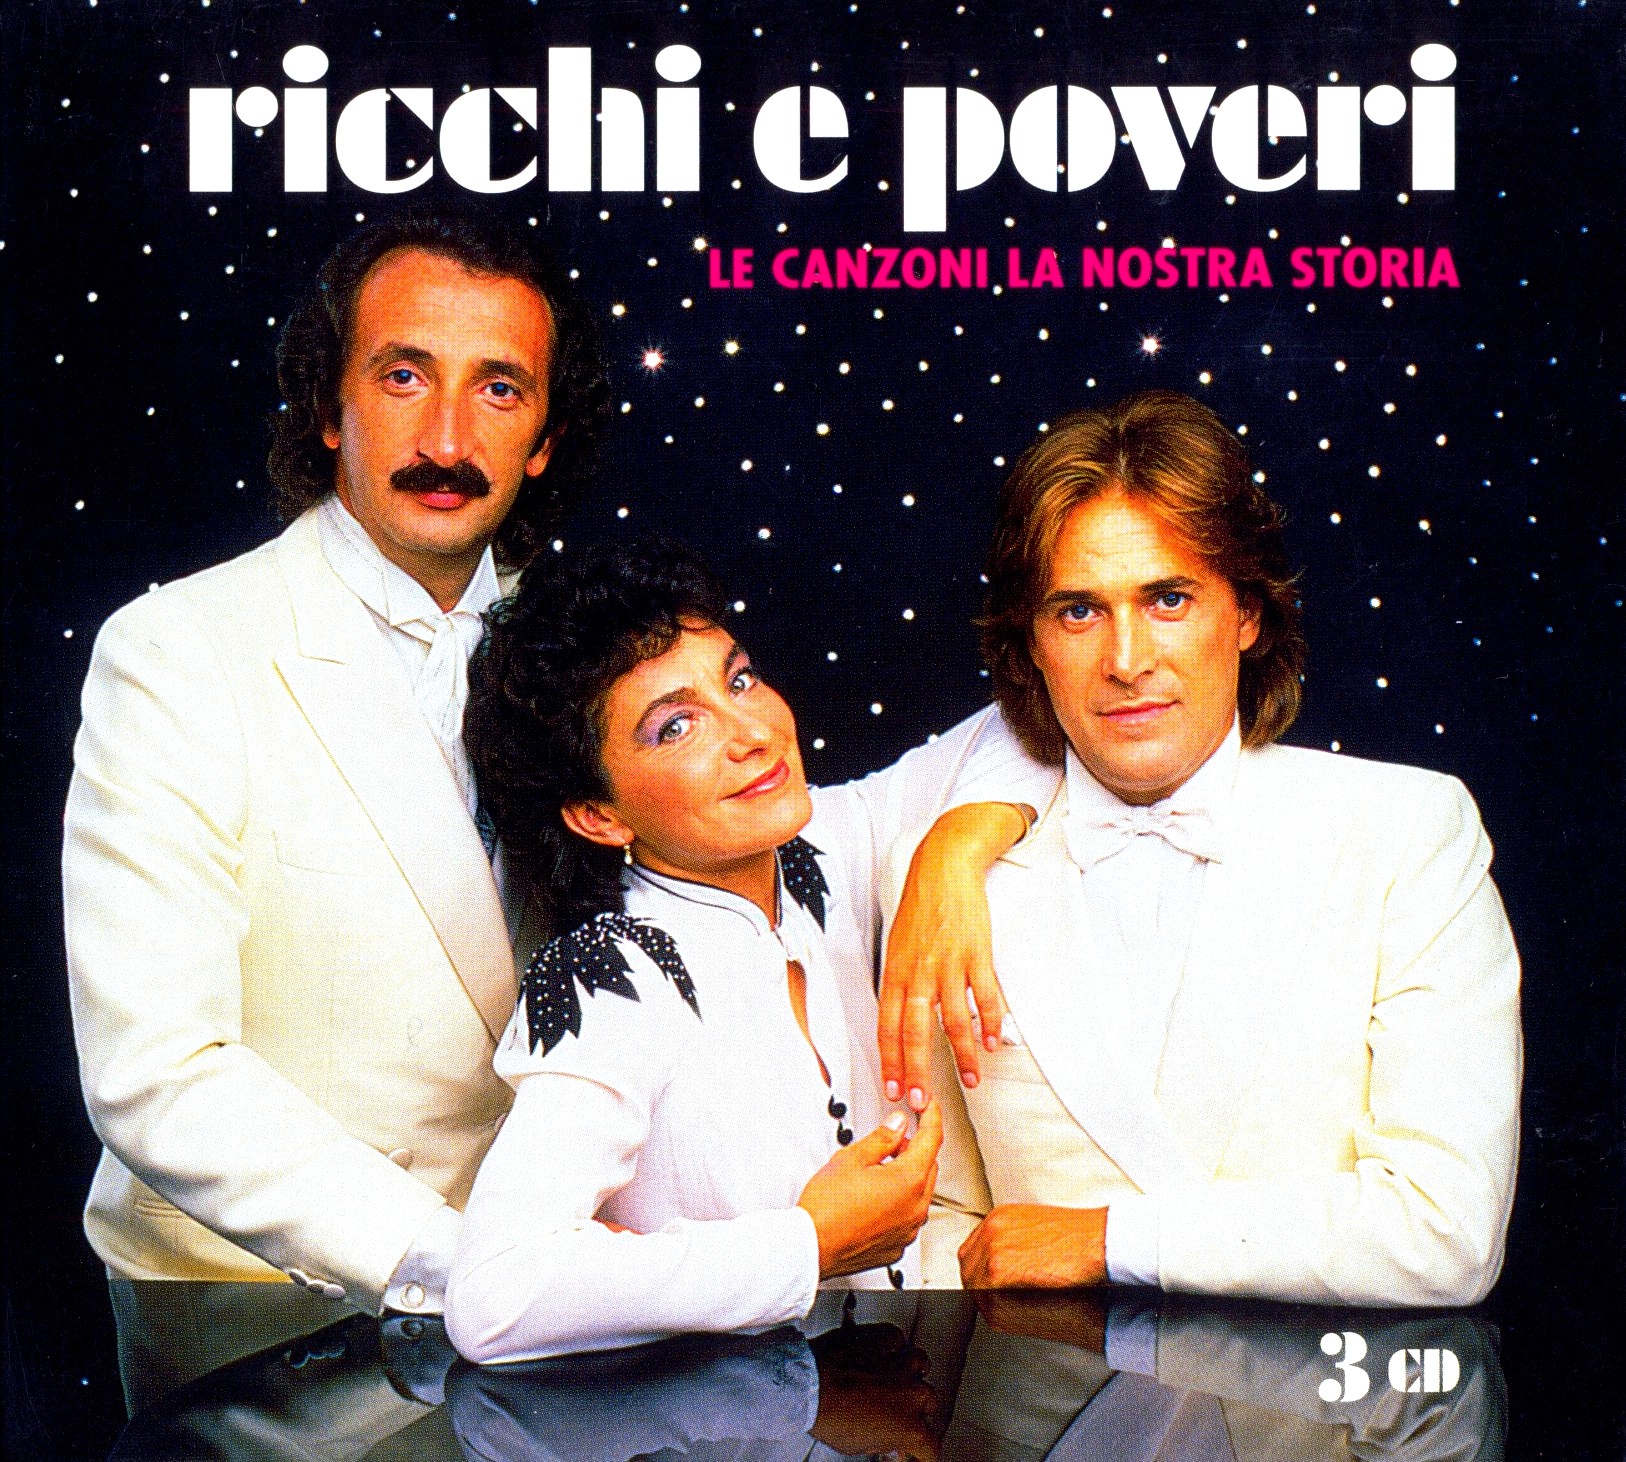 Рикки э повери песни. Группа Ricchi e Poveri. Группа Ricchi e Poveri сейчас. Группа Рики и повери. Итальянская группа Рикки и повери.